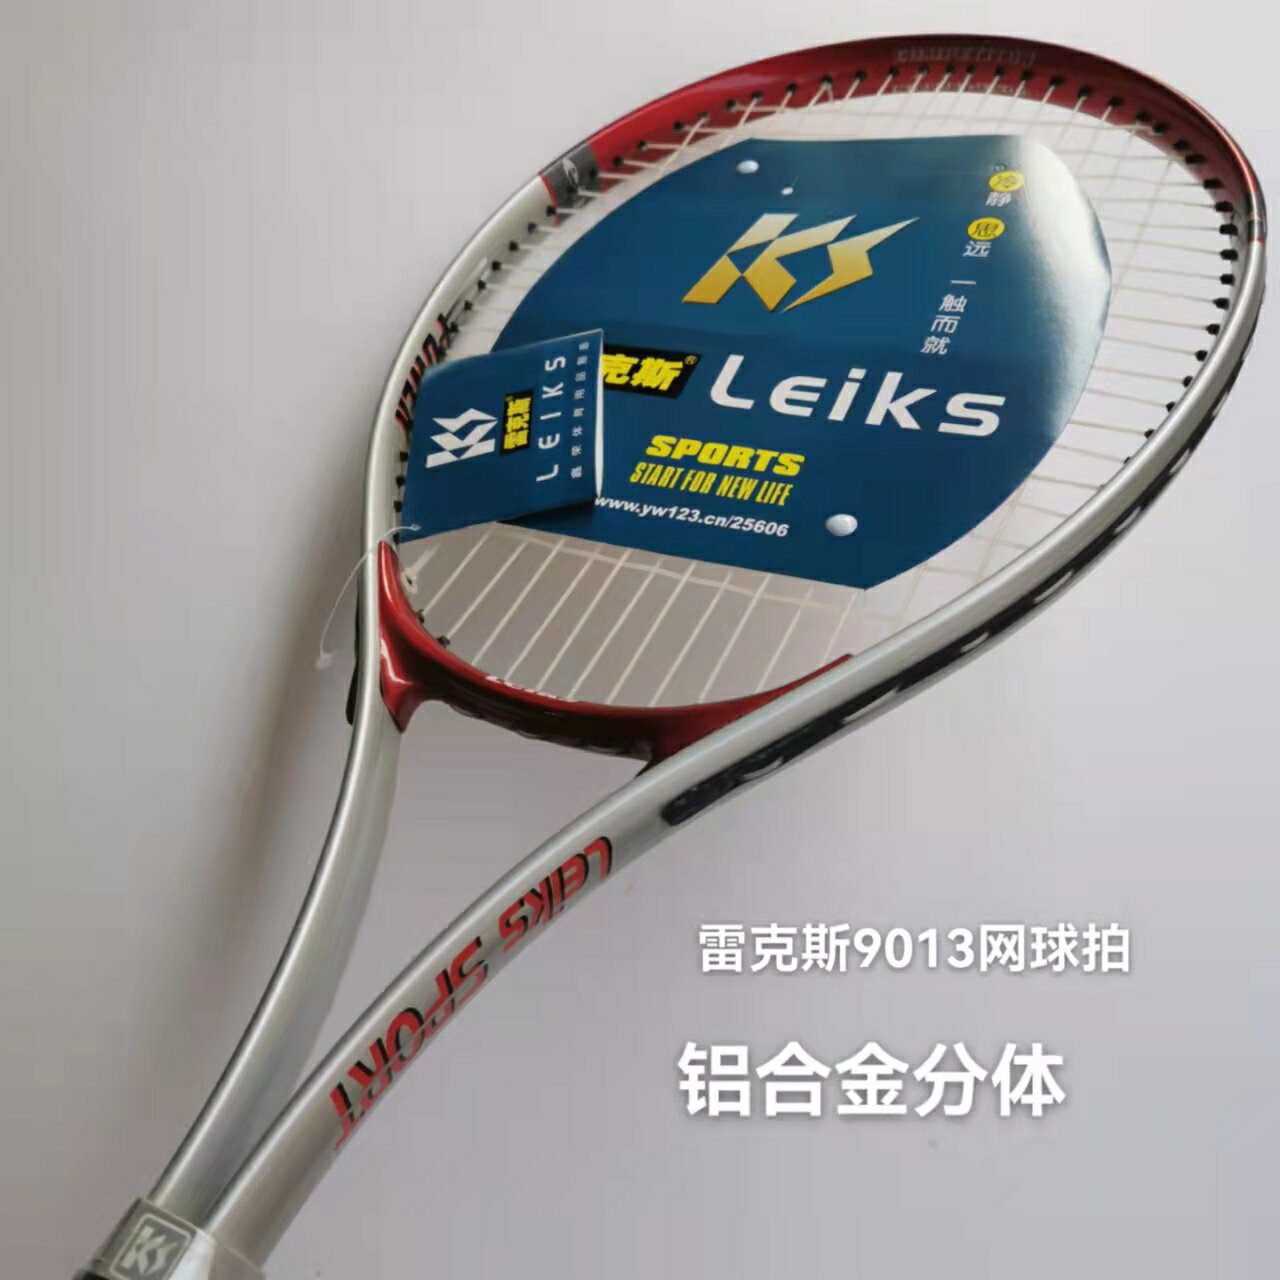 雷克斯網球拍9013鋁合金分體1只裝送1個網球適合于成人初學者